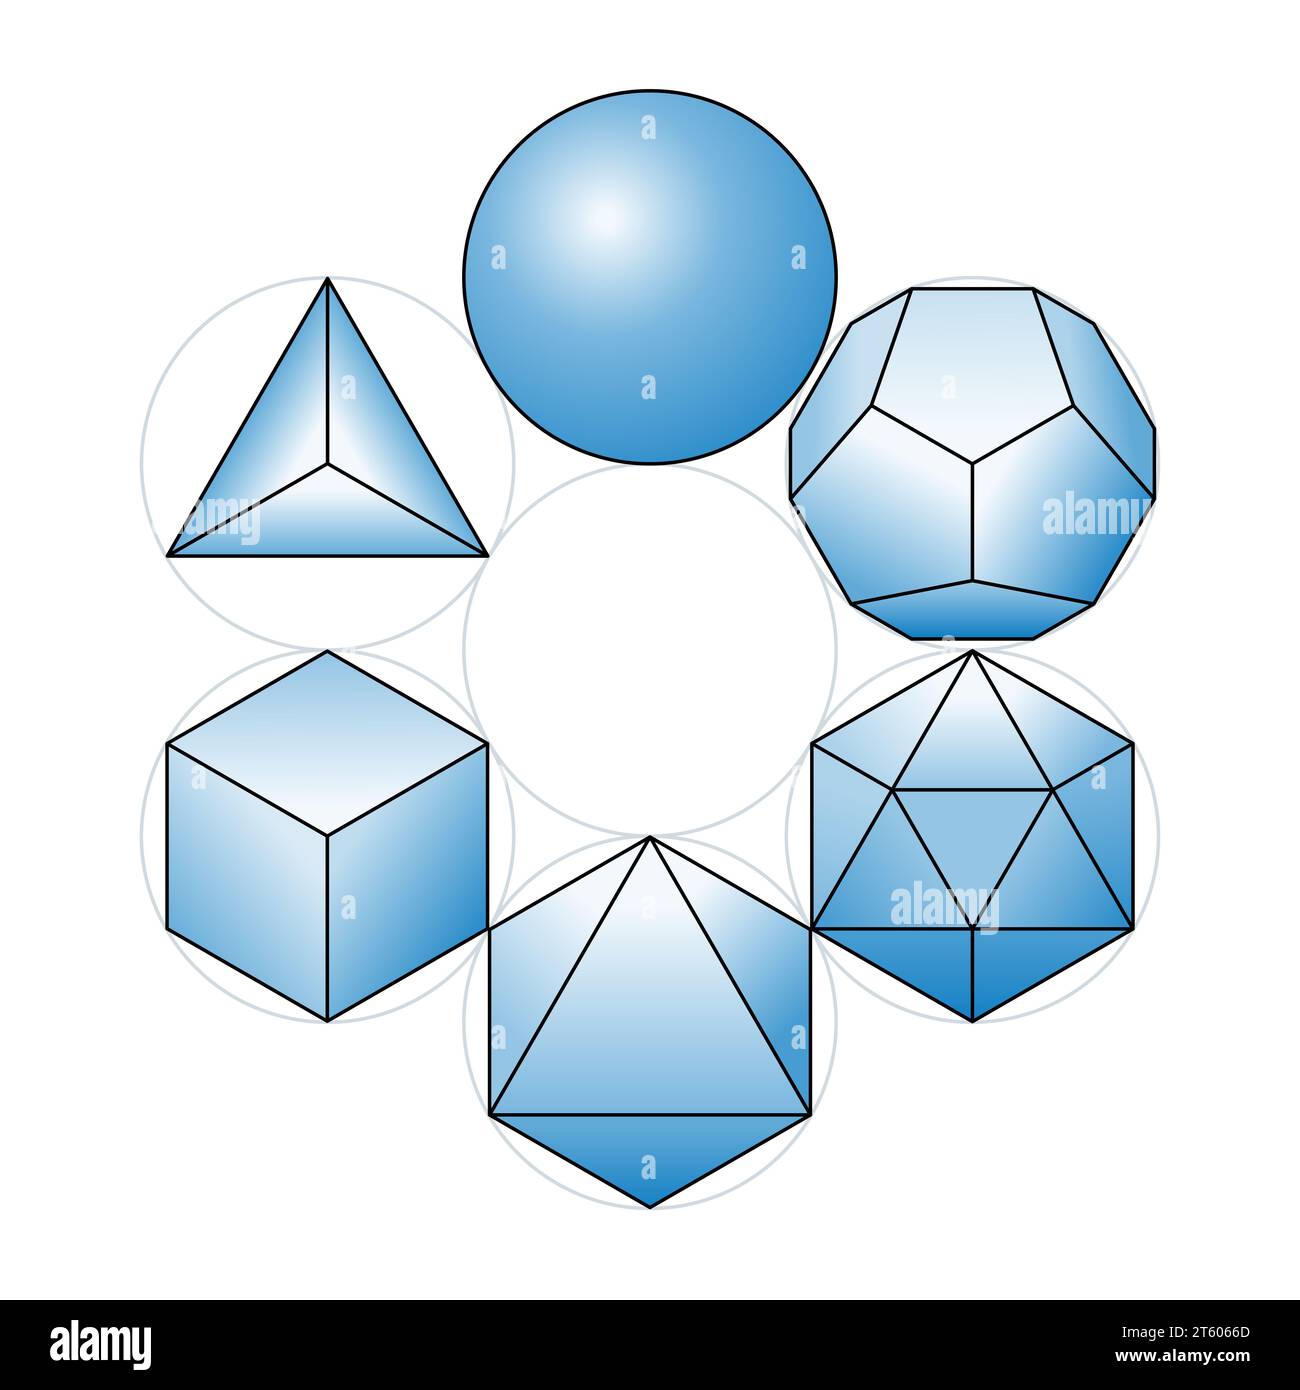 Kugel mit den platonischen Volumenkörpern in Kreisen, alle um einen siebten Kreis angeordnet. Vier Elemente, Äther und Leere. Stockfoto